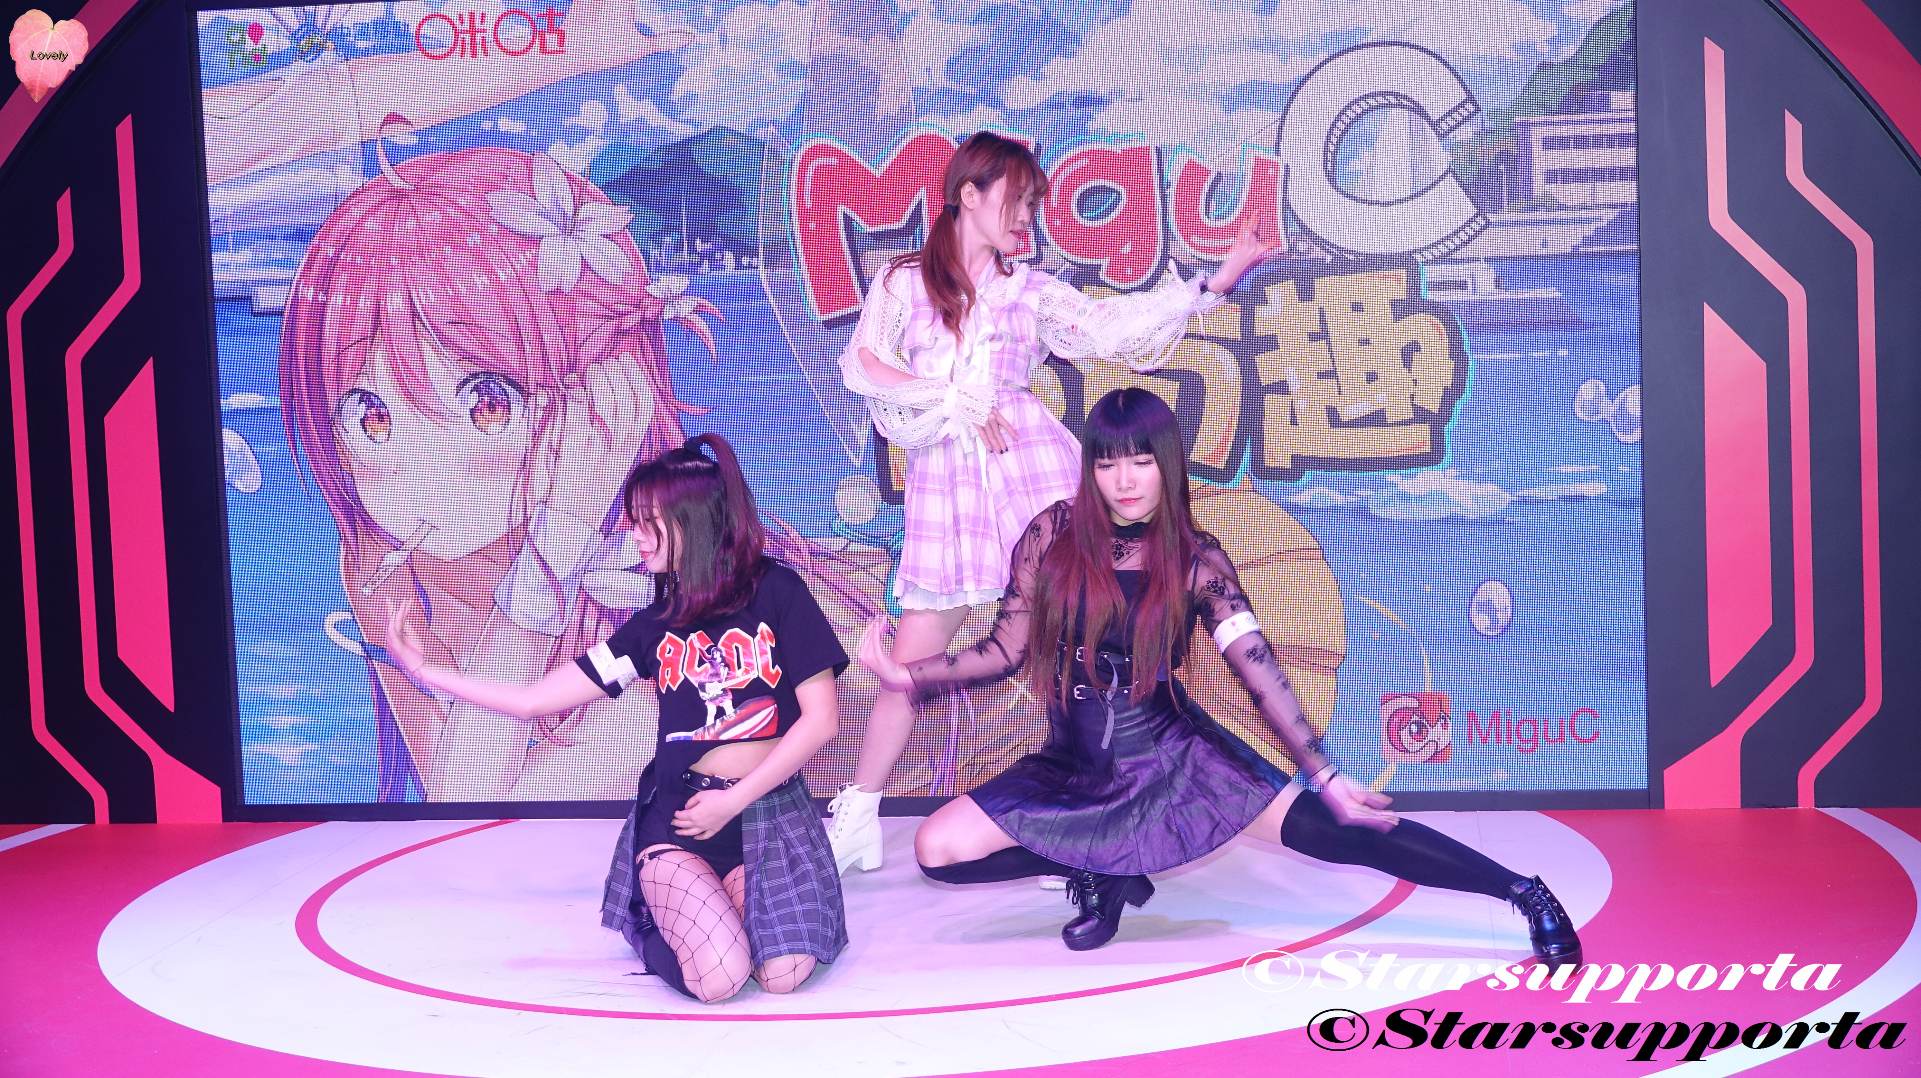 20180728-31 香港動漫電玩節 - MiguC Dancers @ 香港會議展覽中心